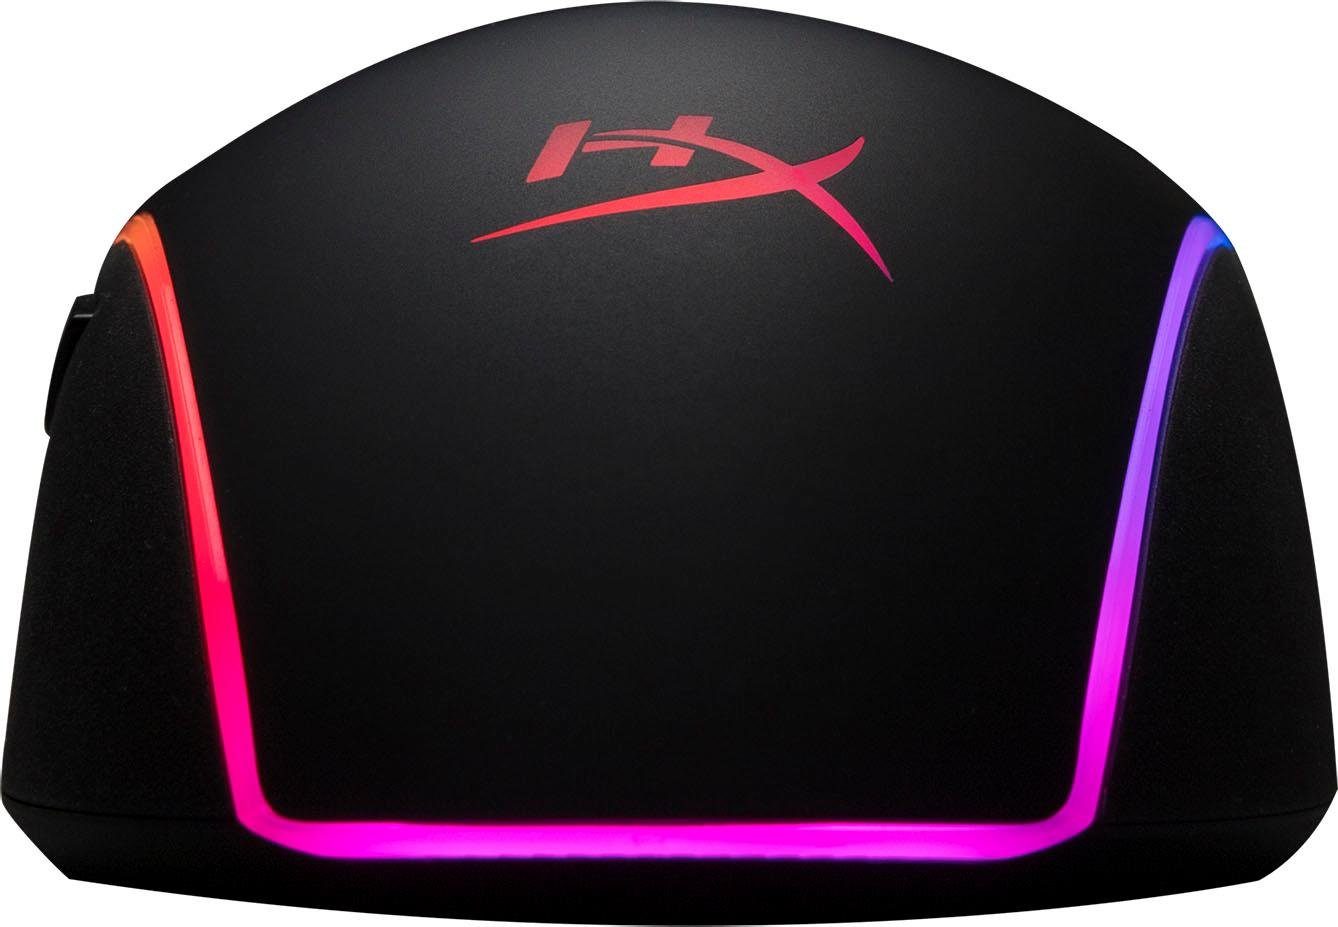 HyperX HyperX Pulsefire Surge RGB Gaming-Maus (kabelgebunden)